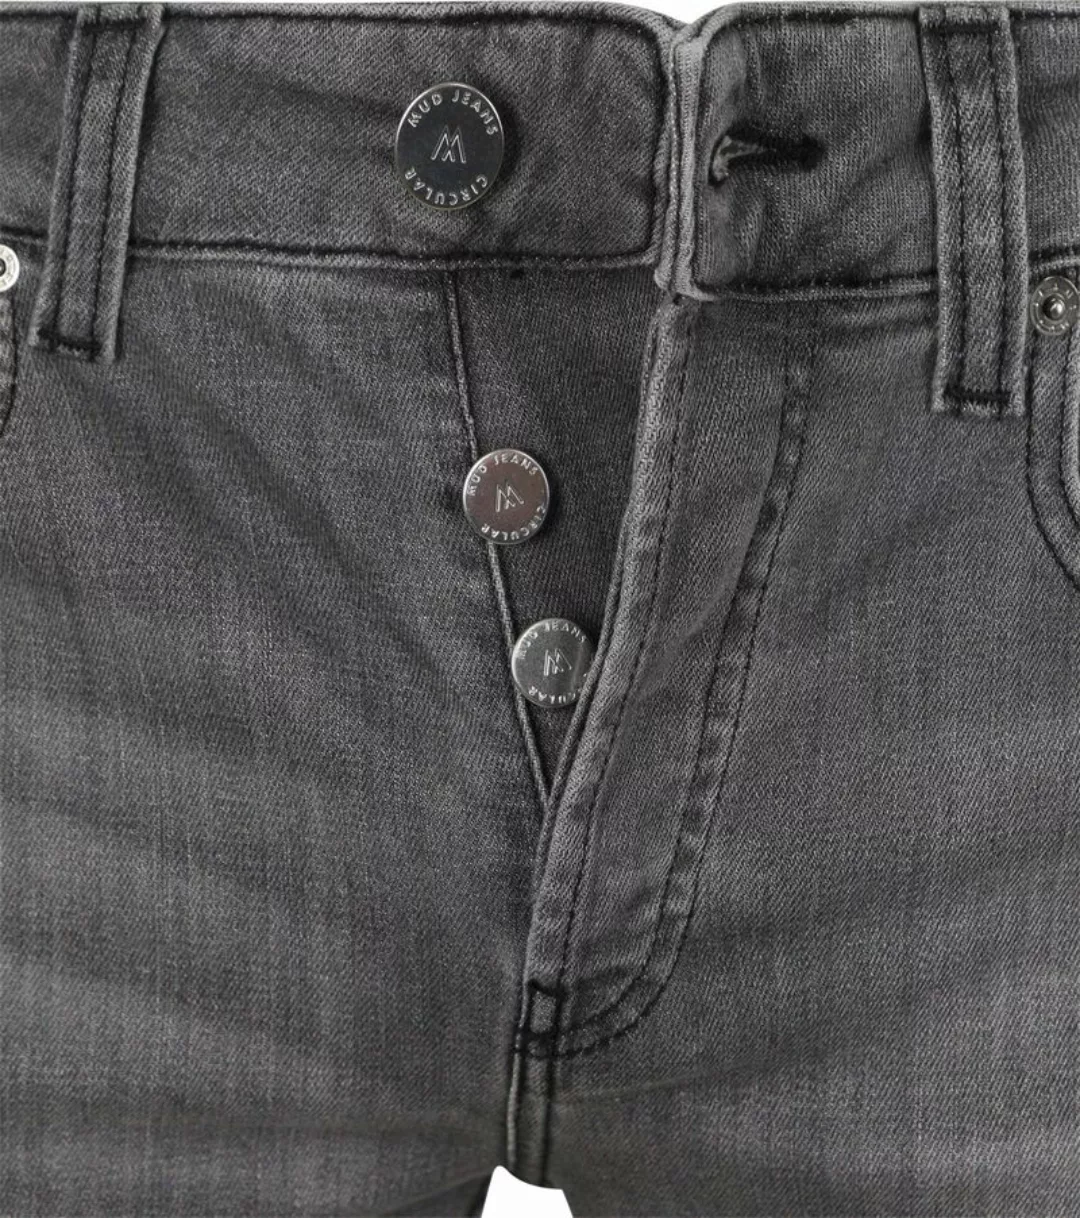 MUD Jeans Denim Slim-Fit Grau - Größe W 33 - L 32 günstig online kaufen